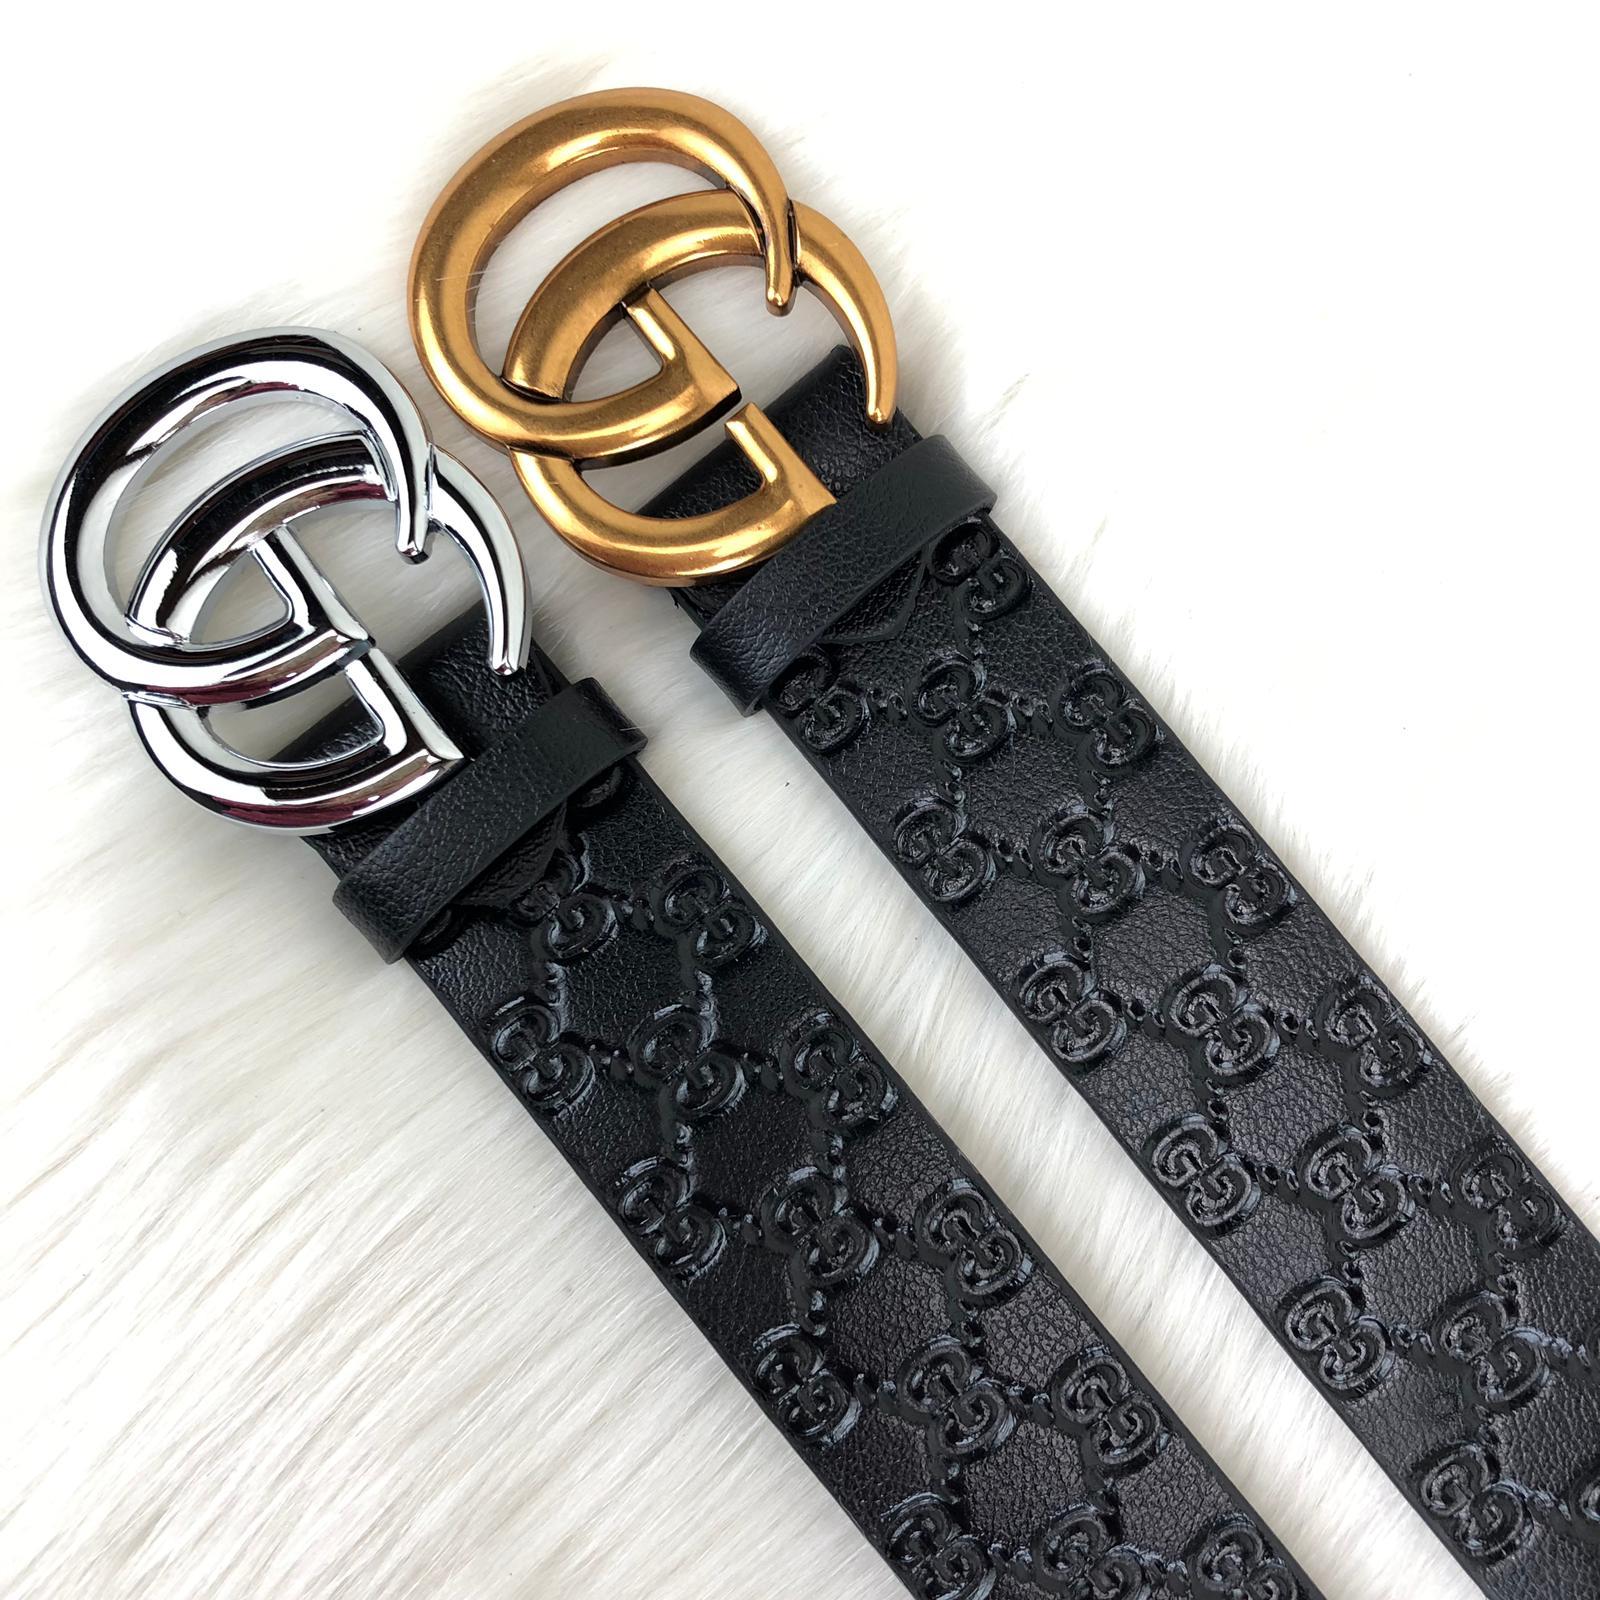 gucci belt design